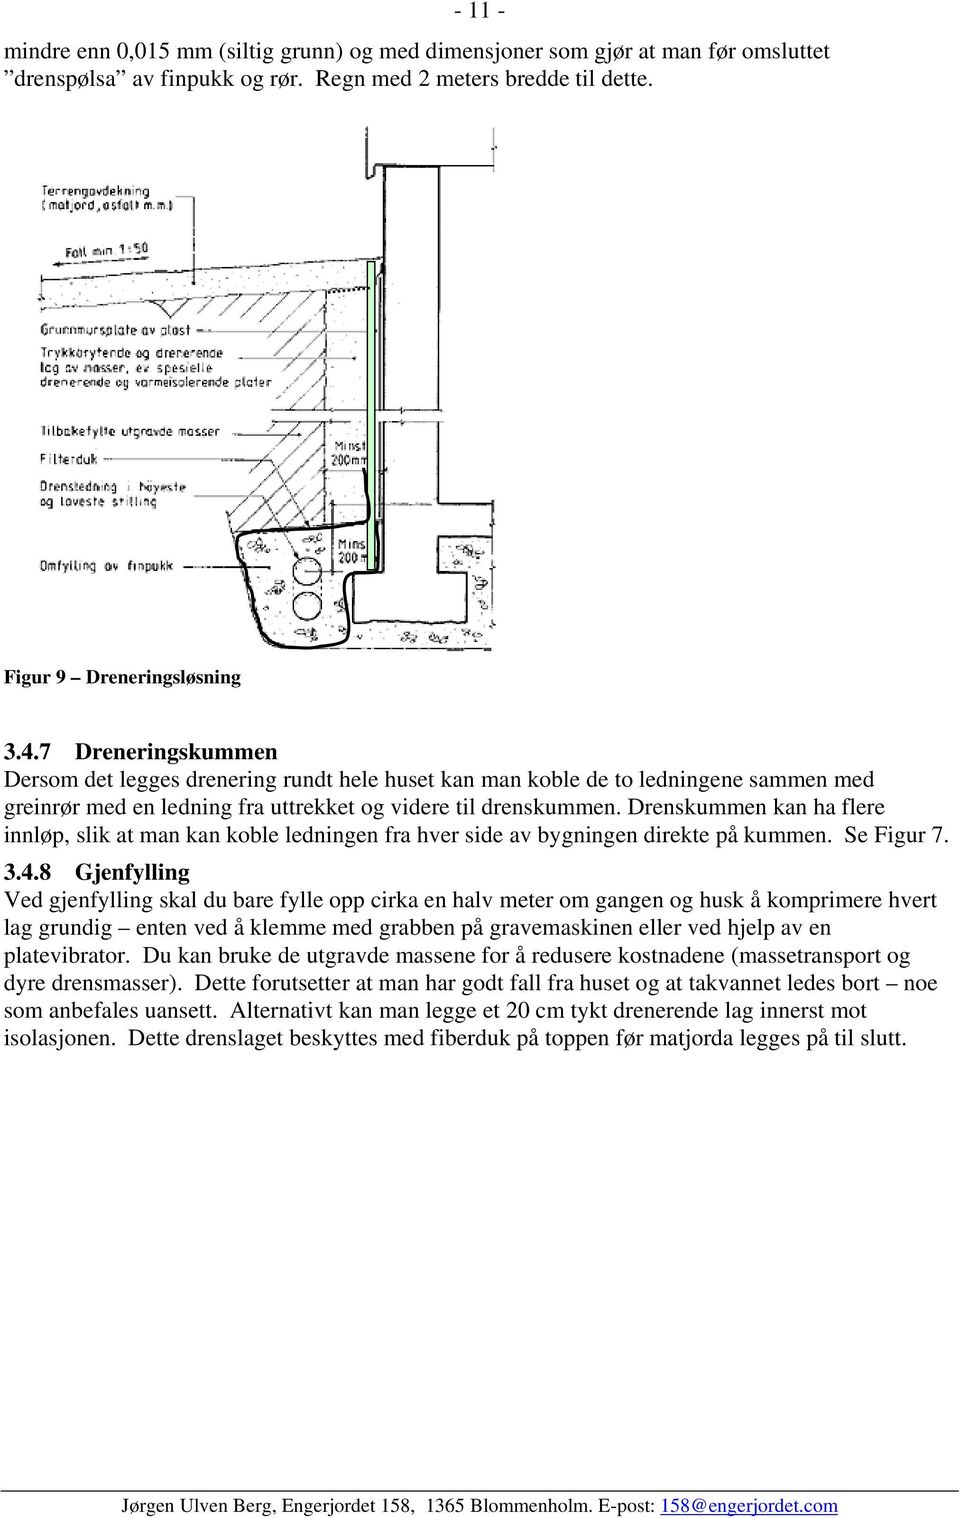 Drenskummen kan ha flere innløp, slik at man kan koble ledningen fra hver side av bygningen direkte på kummen. Se Figur 7. 3.4.